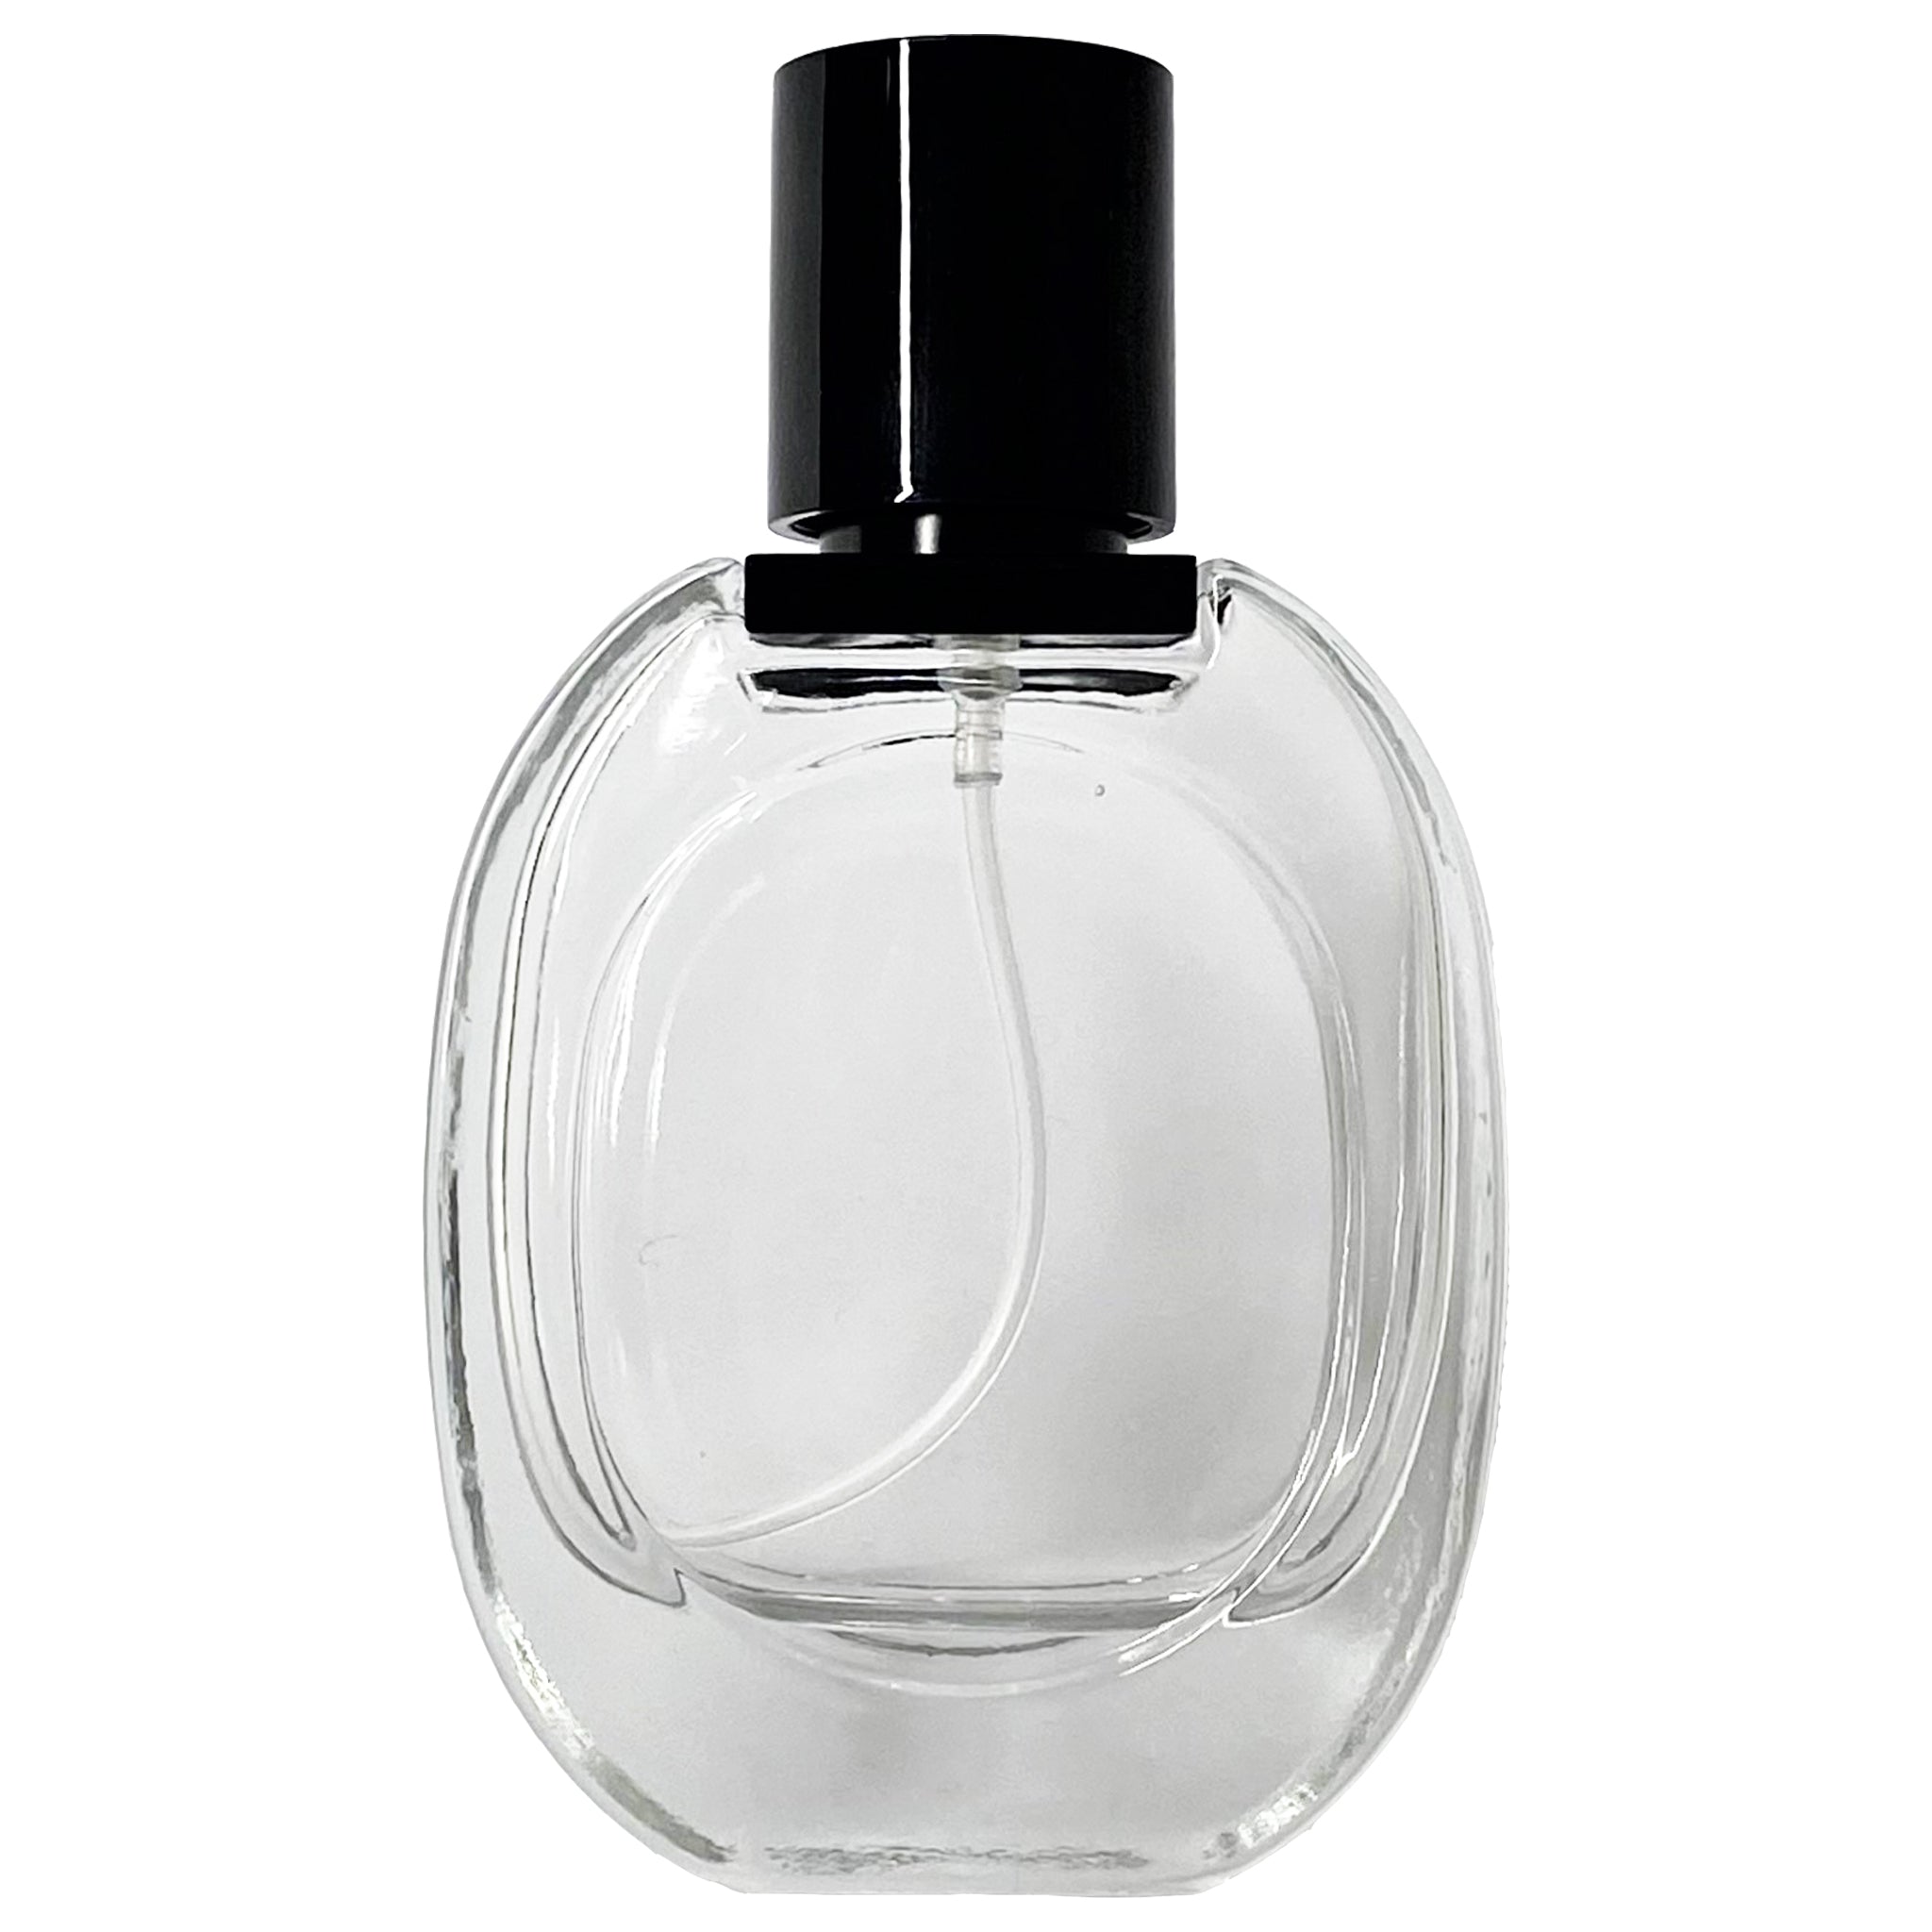 30ml 1oz Glass Perfume Oval Spray Bottles Black Atomizer